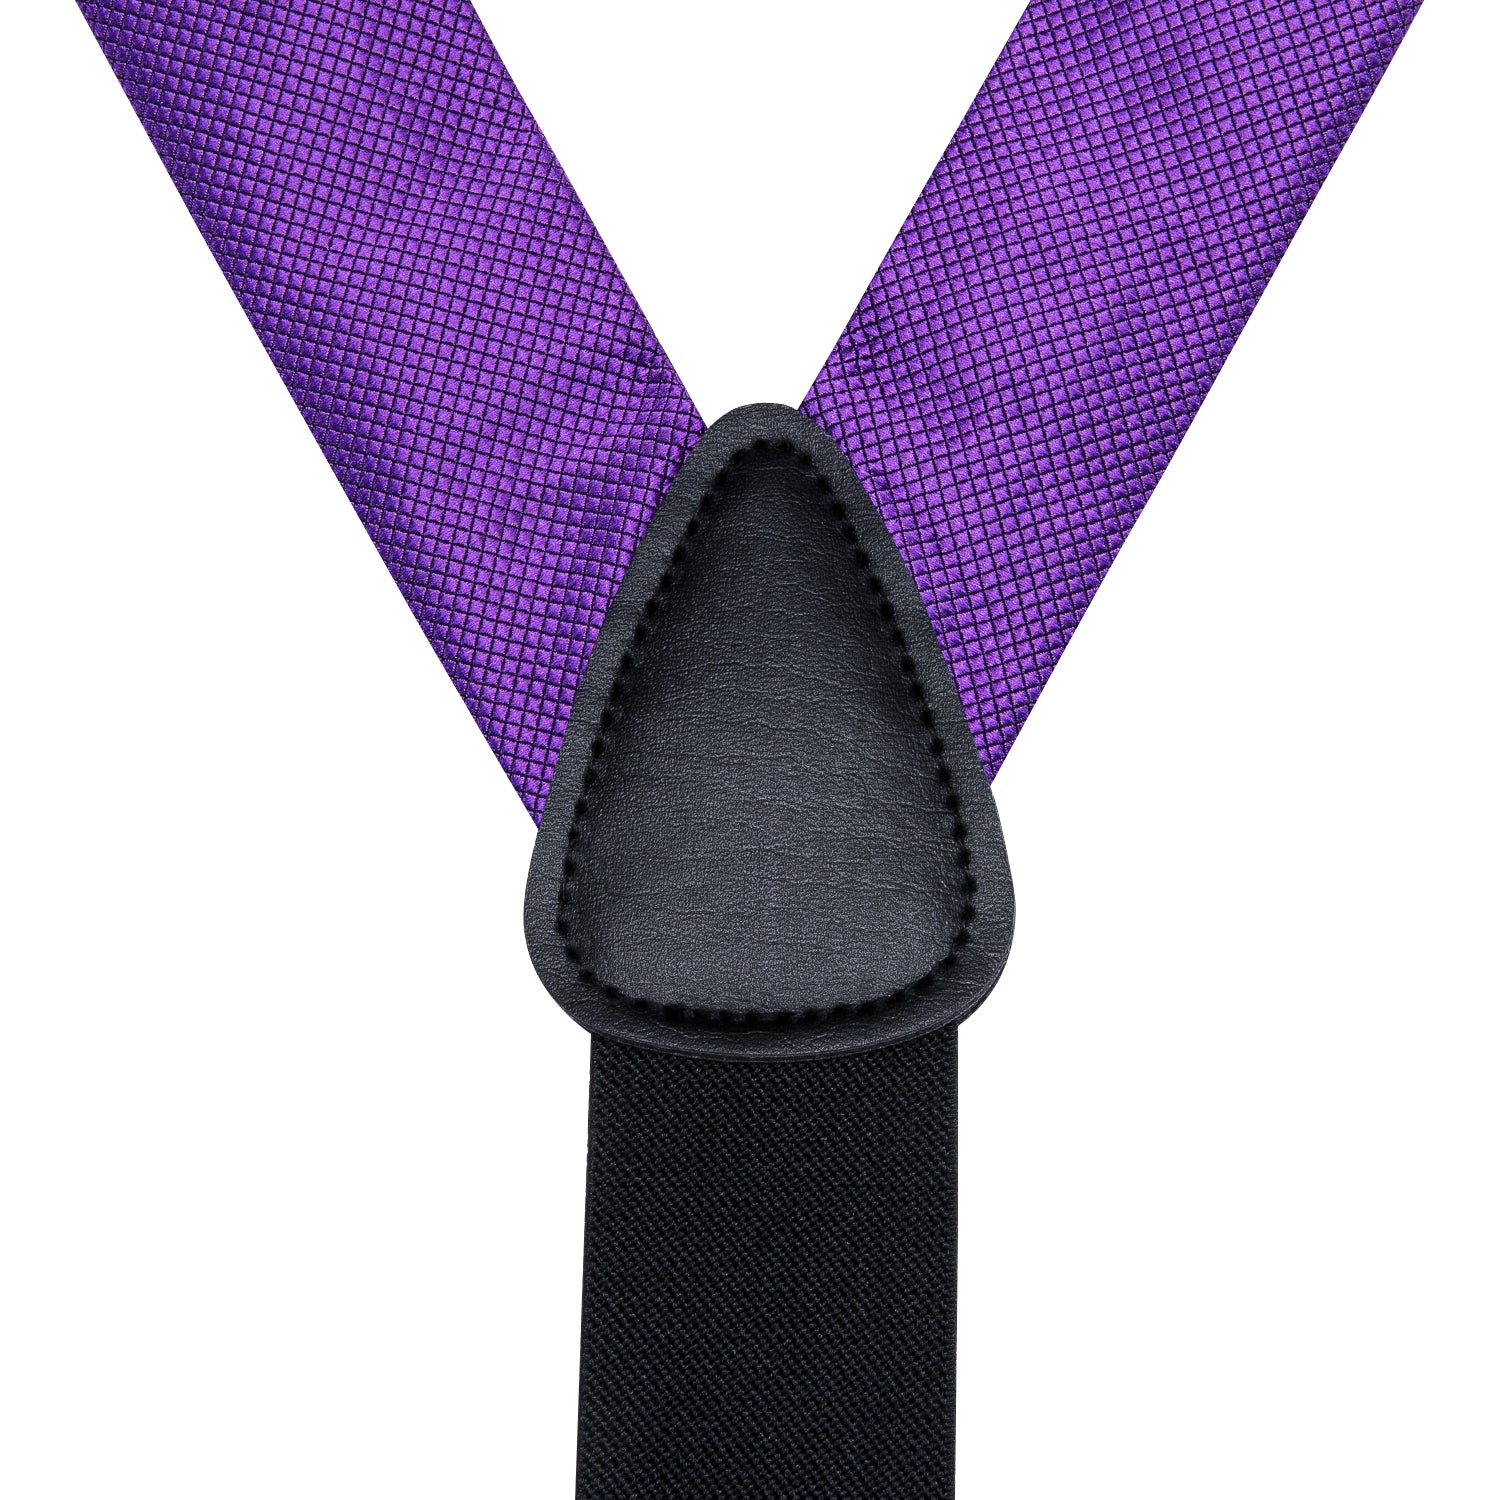 Purple Plaid Suspender Bowtie Hanky Cufflinks Set